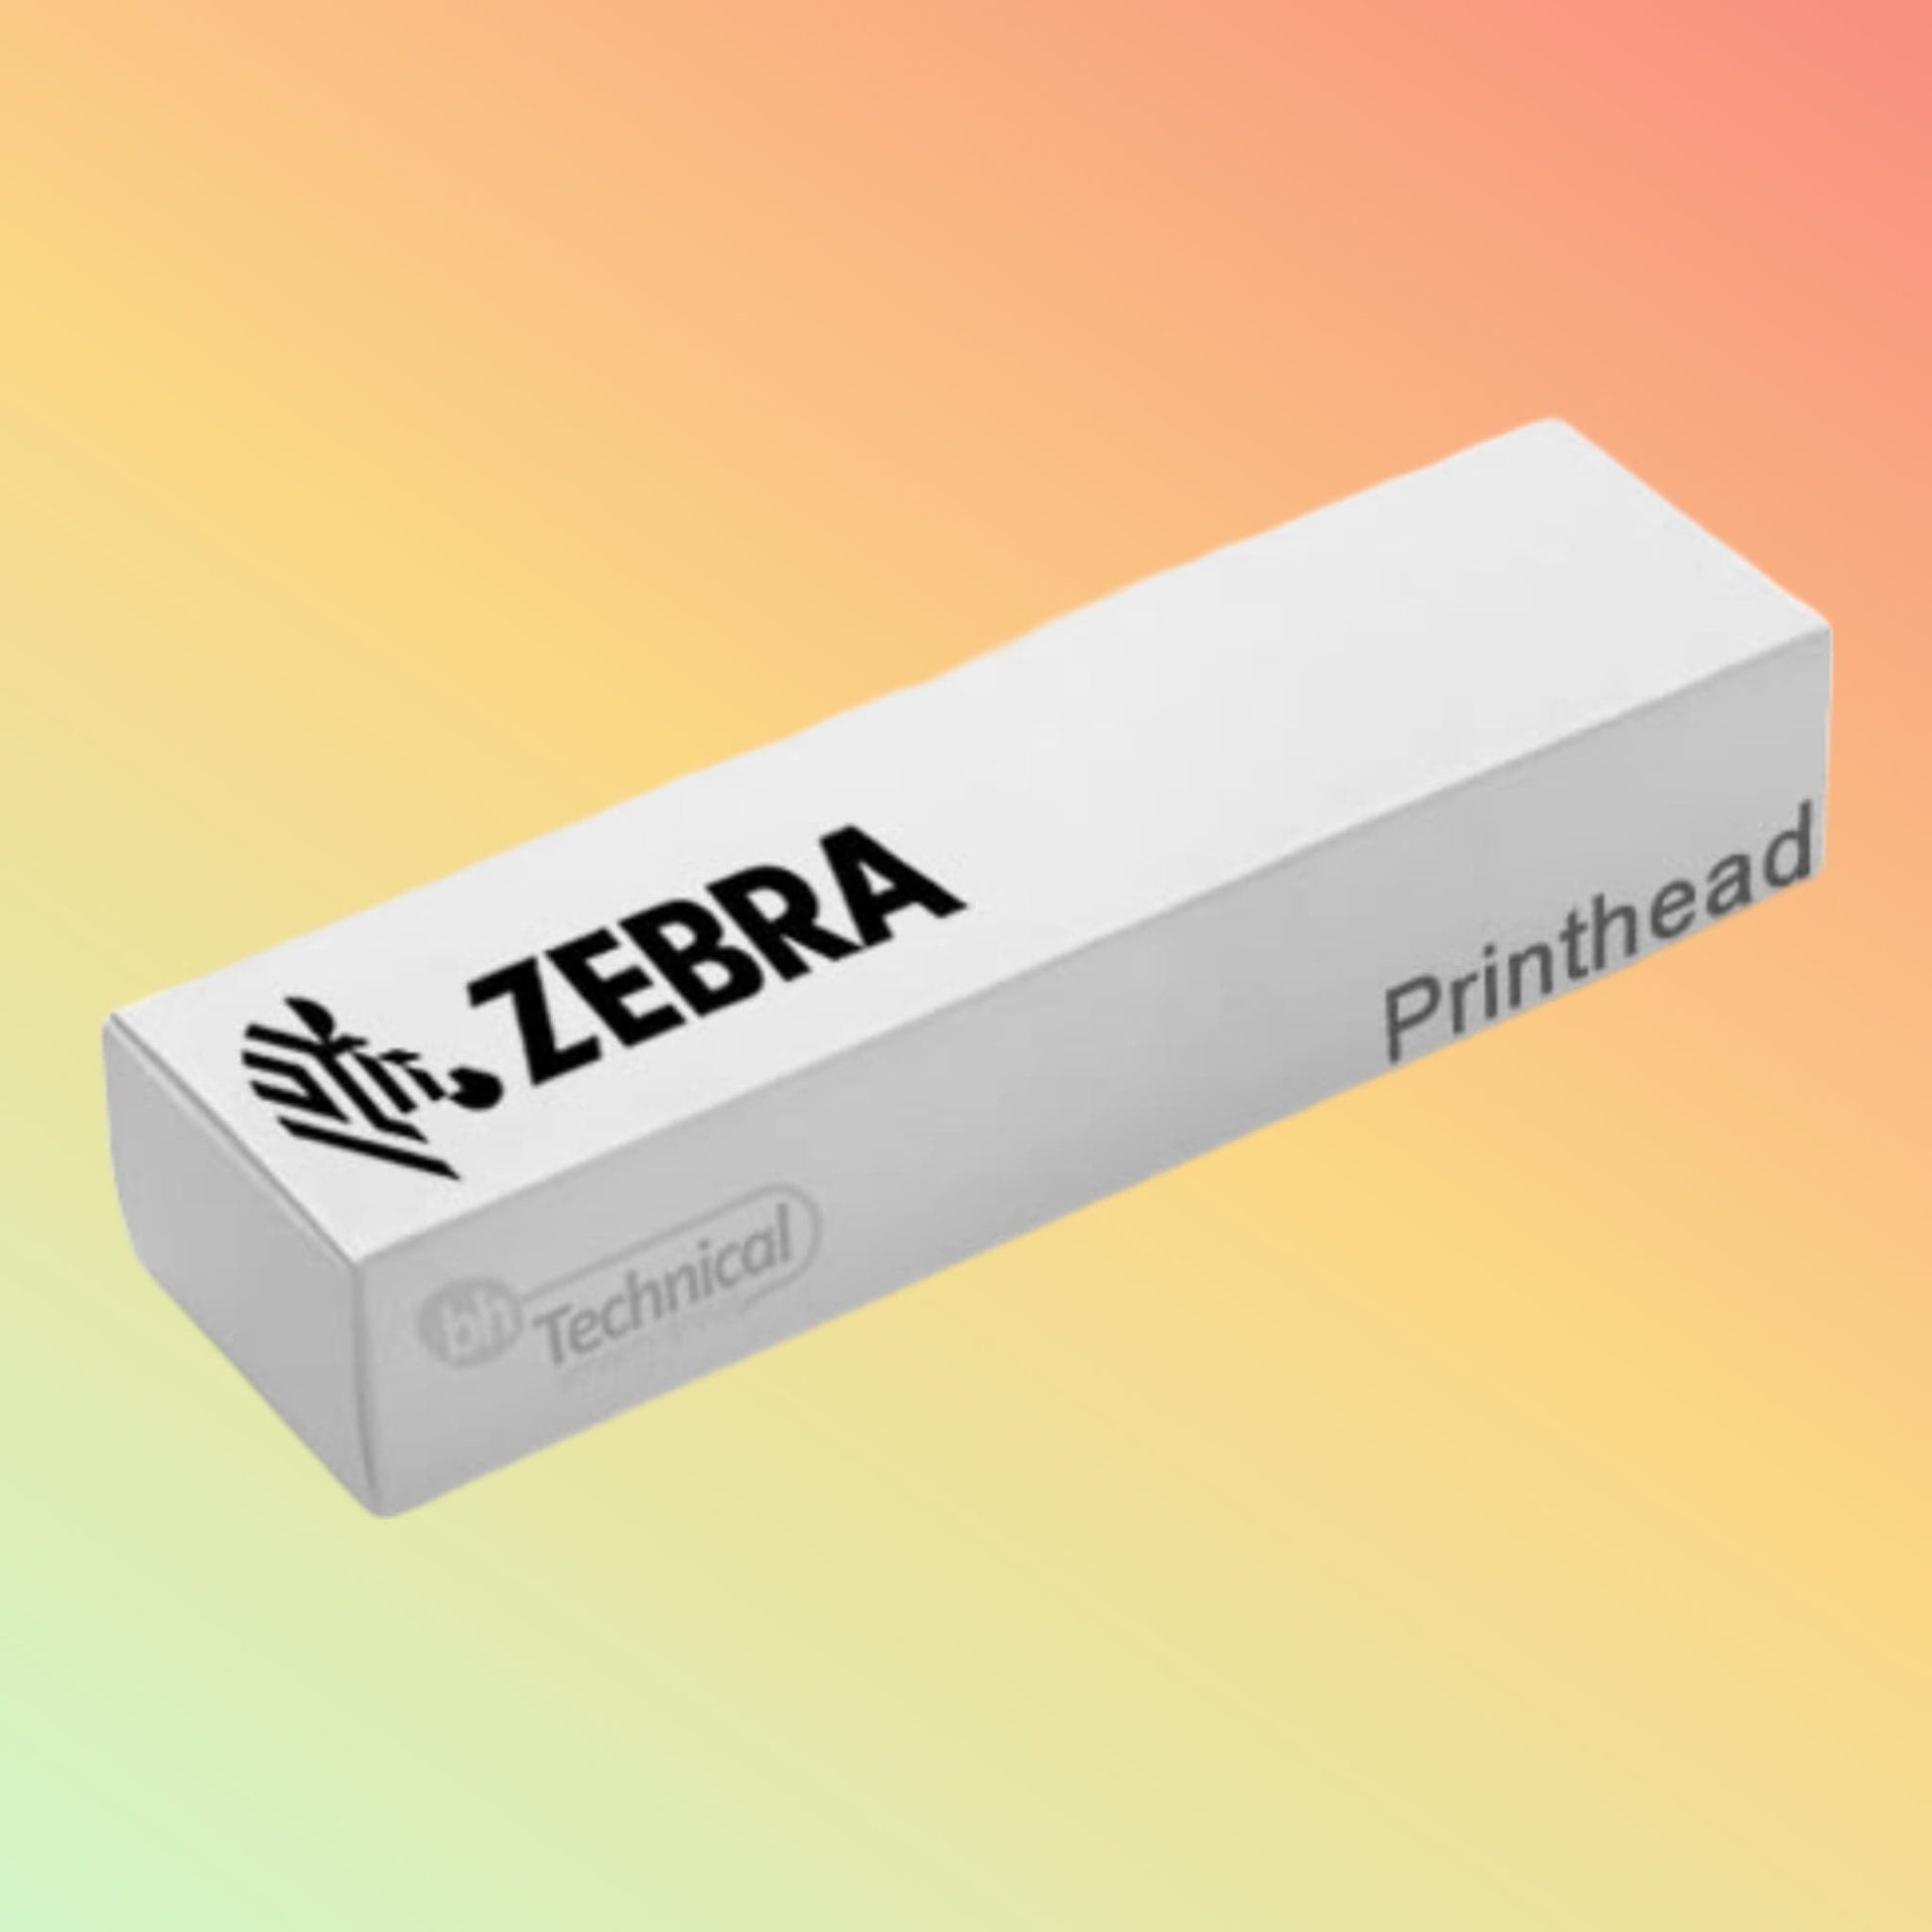 Zebra Printhead - S4M (203dpi) - G41400M - NEOTECH